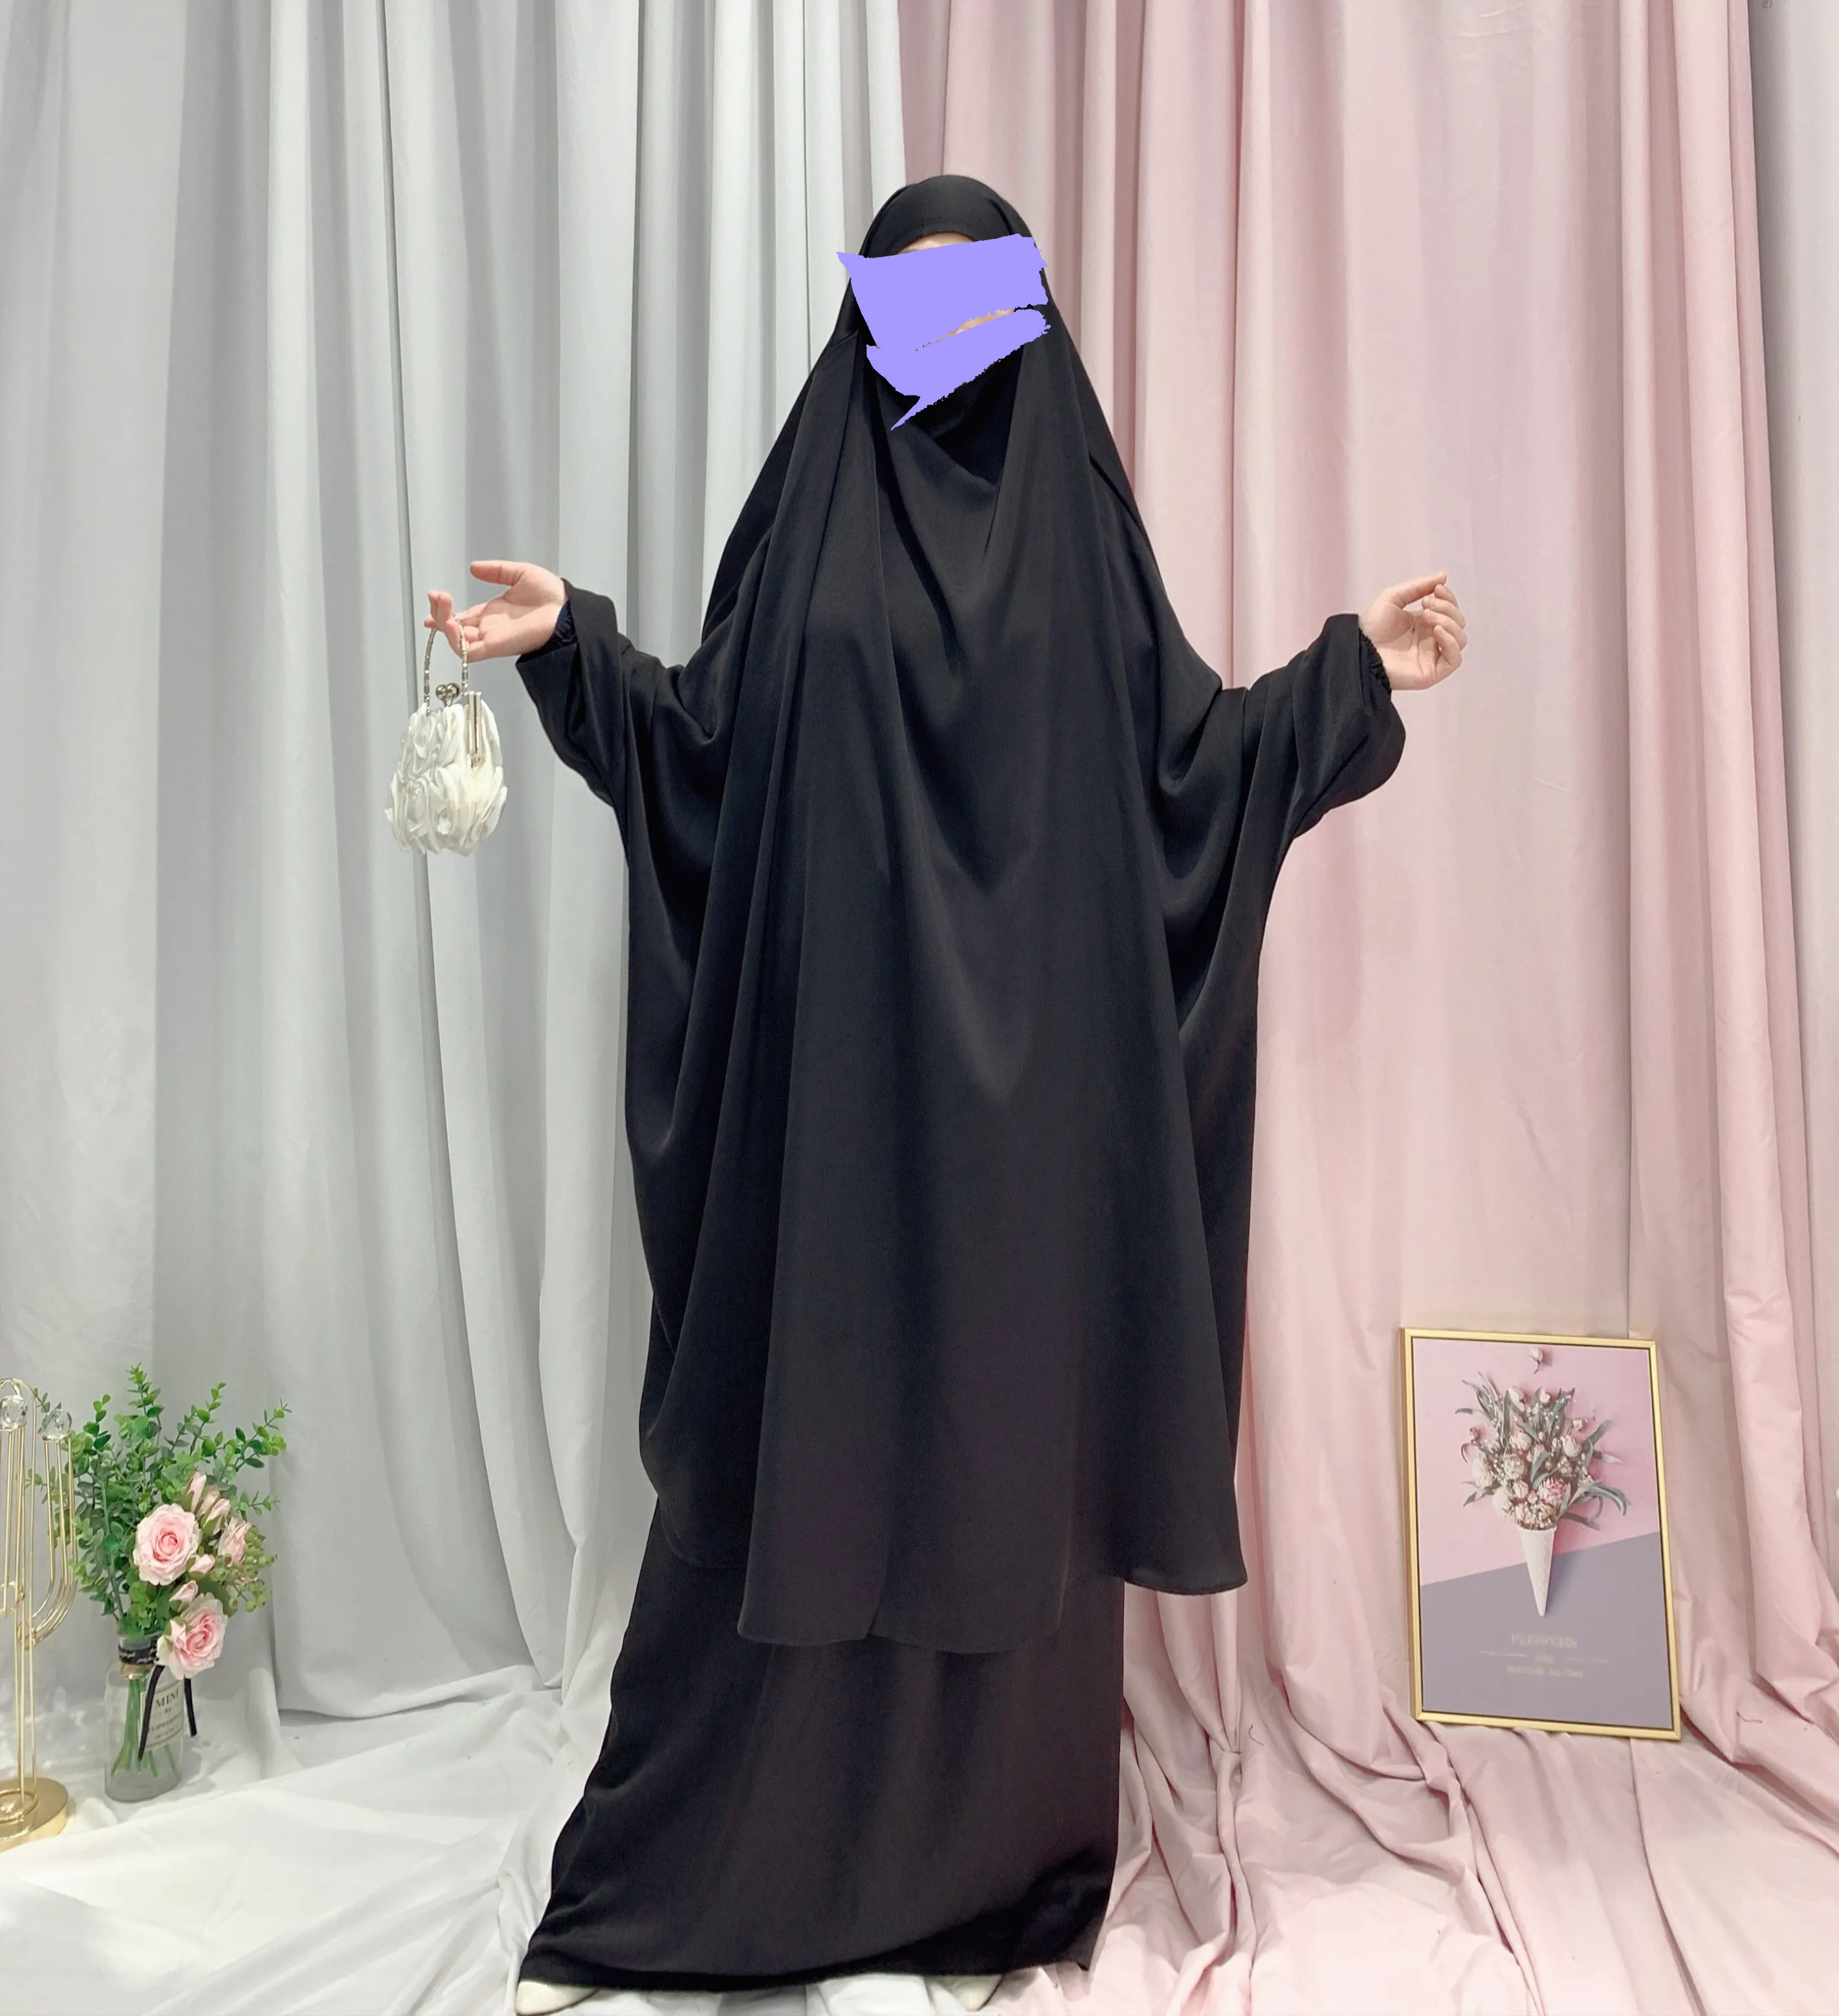 אסלאמי צנוע בגדי שתי חתיכה jilbab ניקאב khimar jilbab חיג 'אב נשים burkha העבאיה שמלה